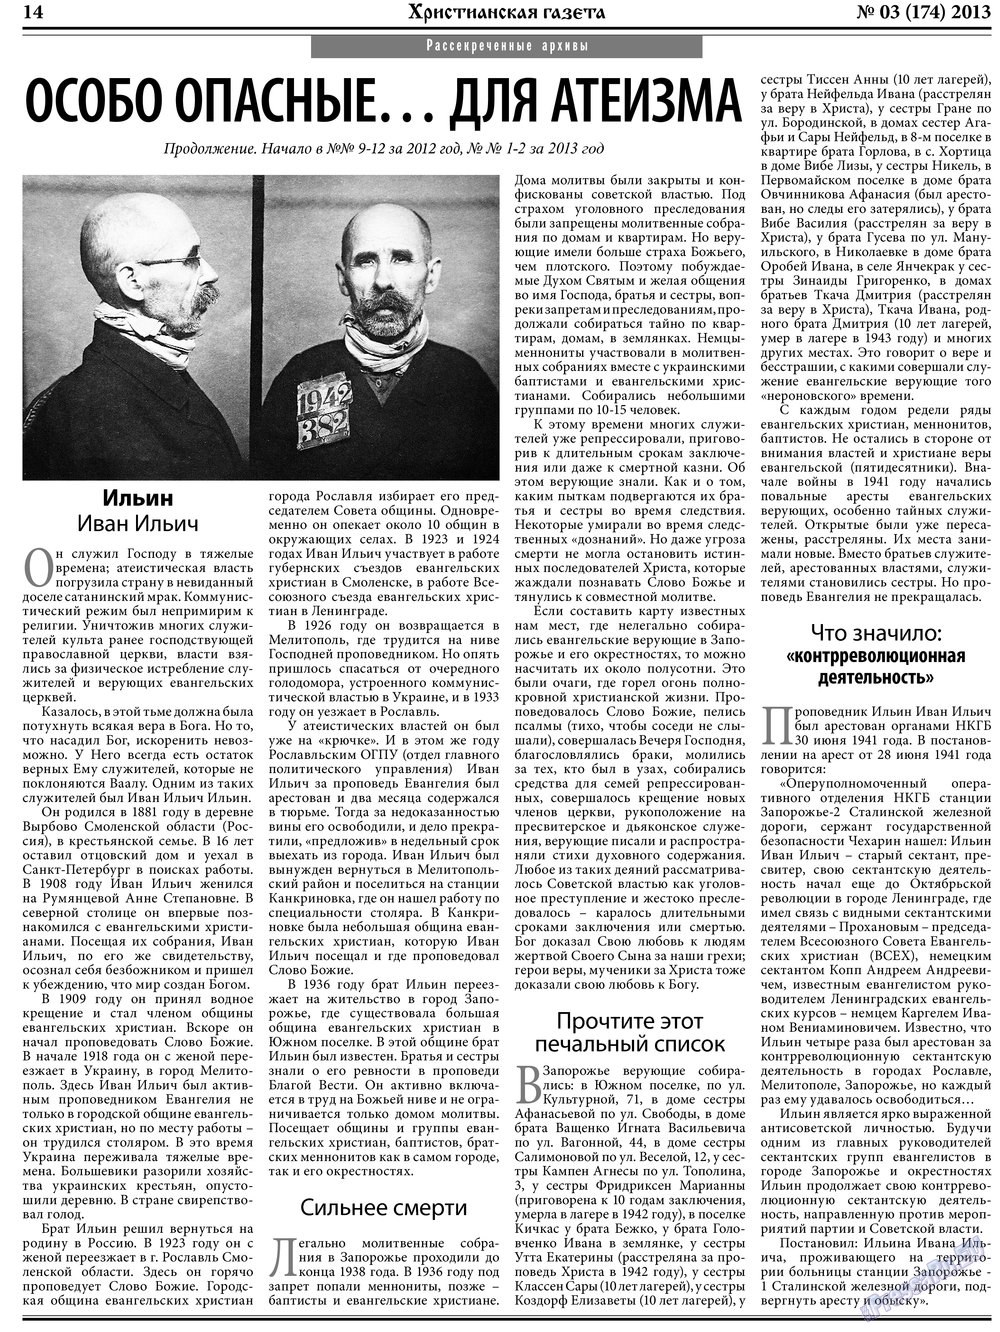 Христианская газета, газета. 2013 №3 стр.22